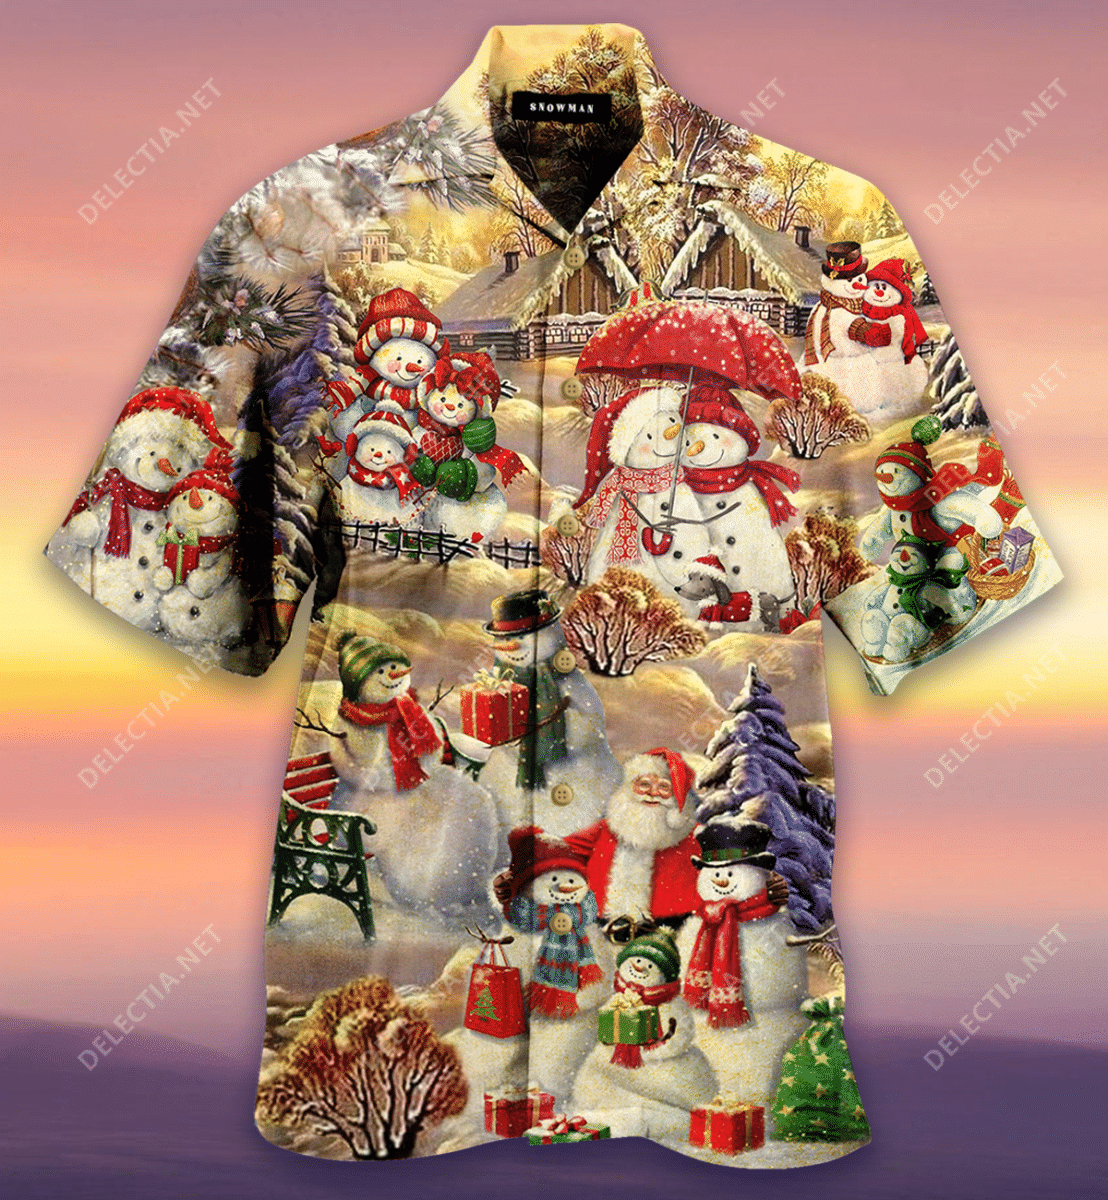 kurobase-all-hearts-come-home-for-christmas-hawaiian-shirt.png